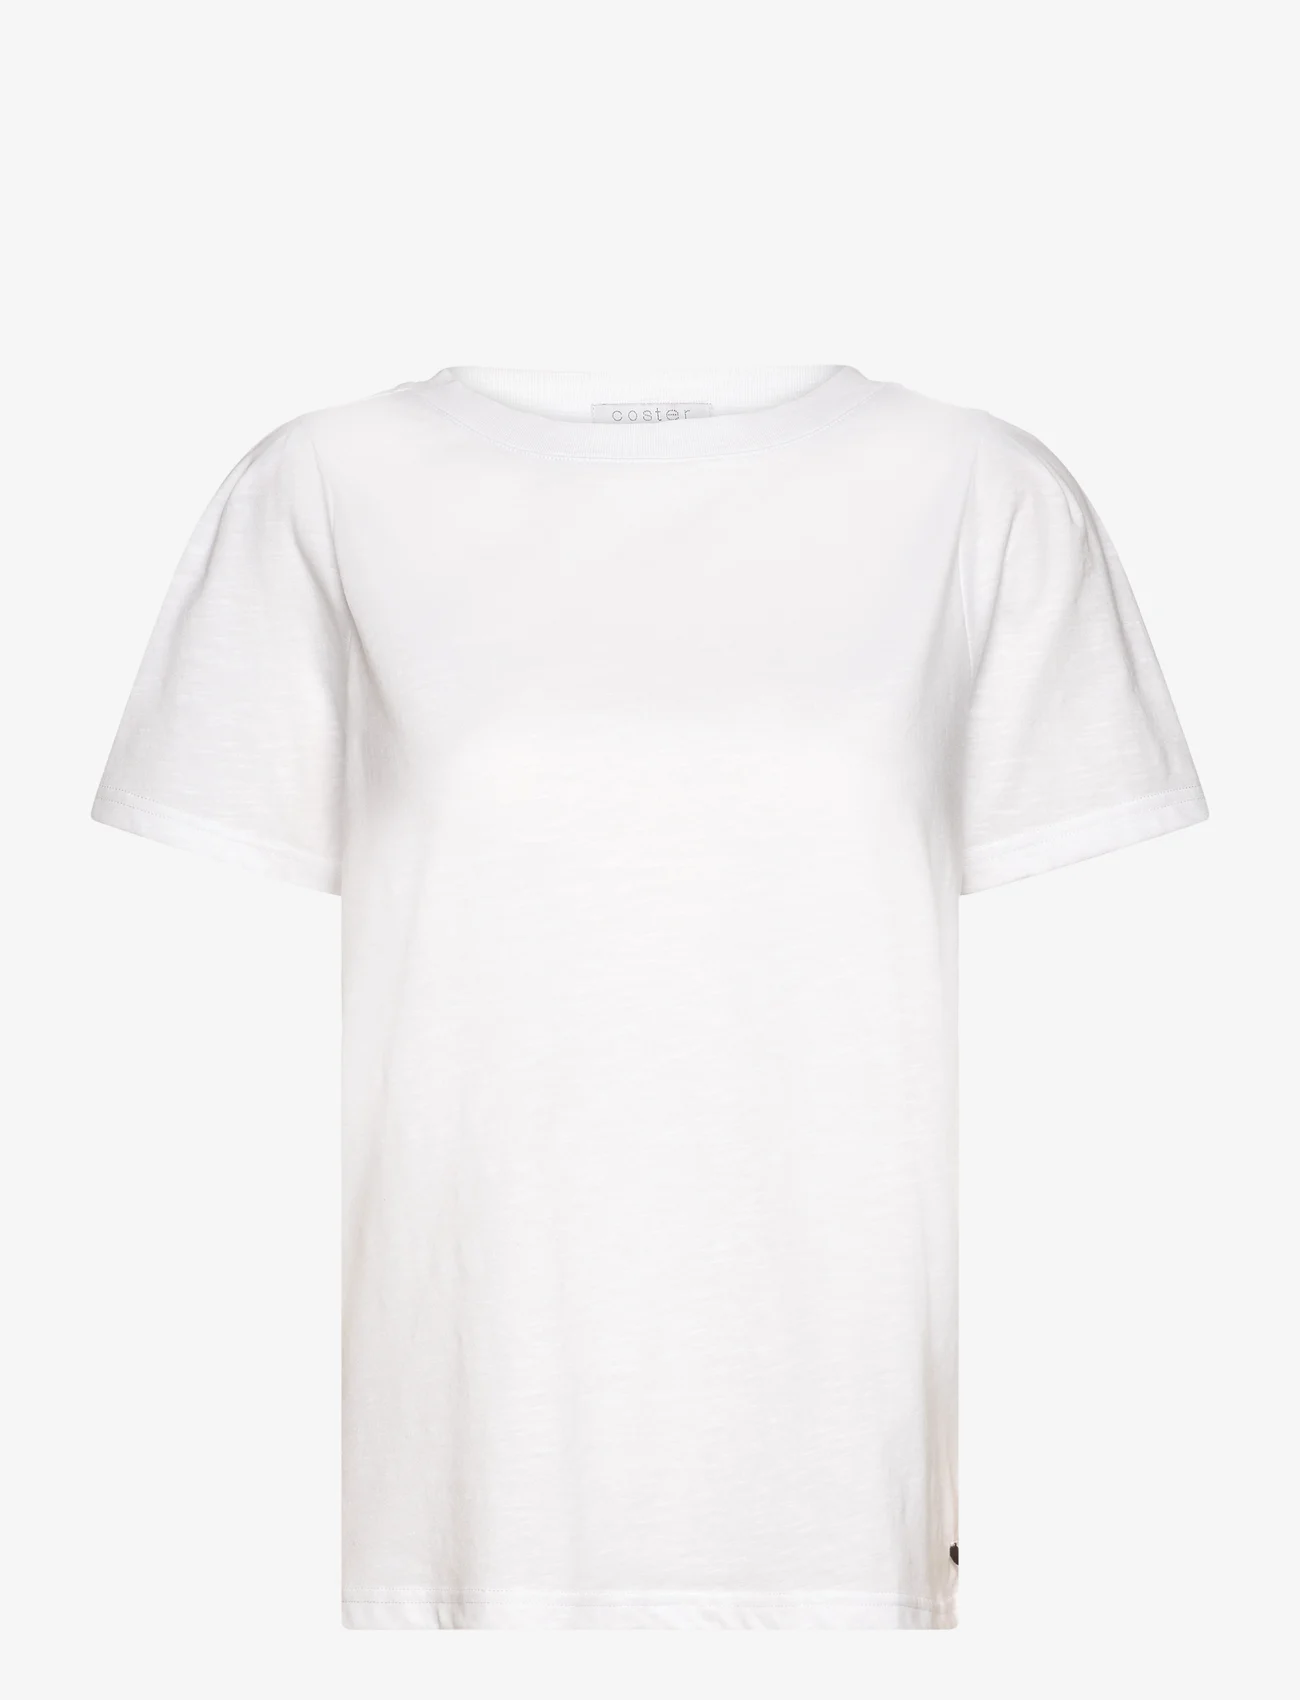 Coster Copenhagen - T-shirt with pleats - die niedrigsten preise - white - 0